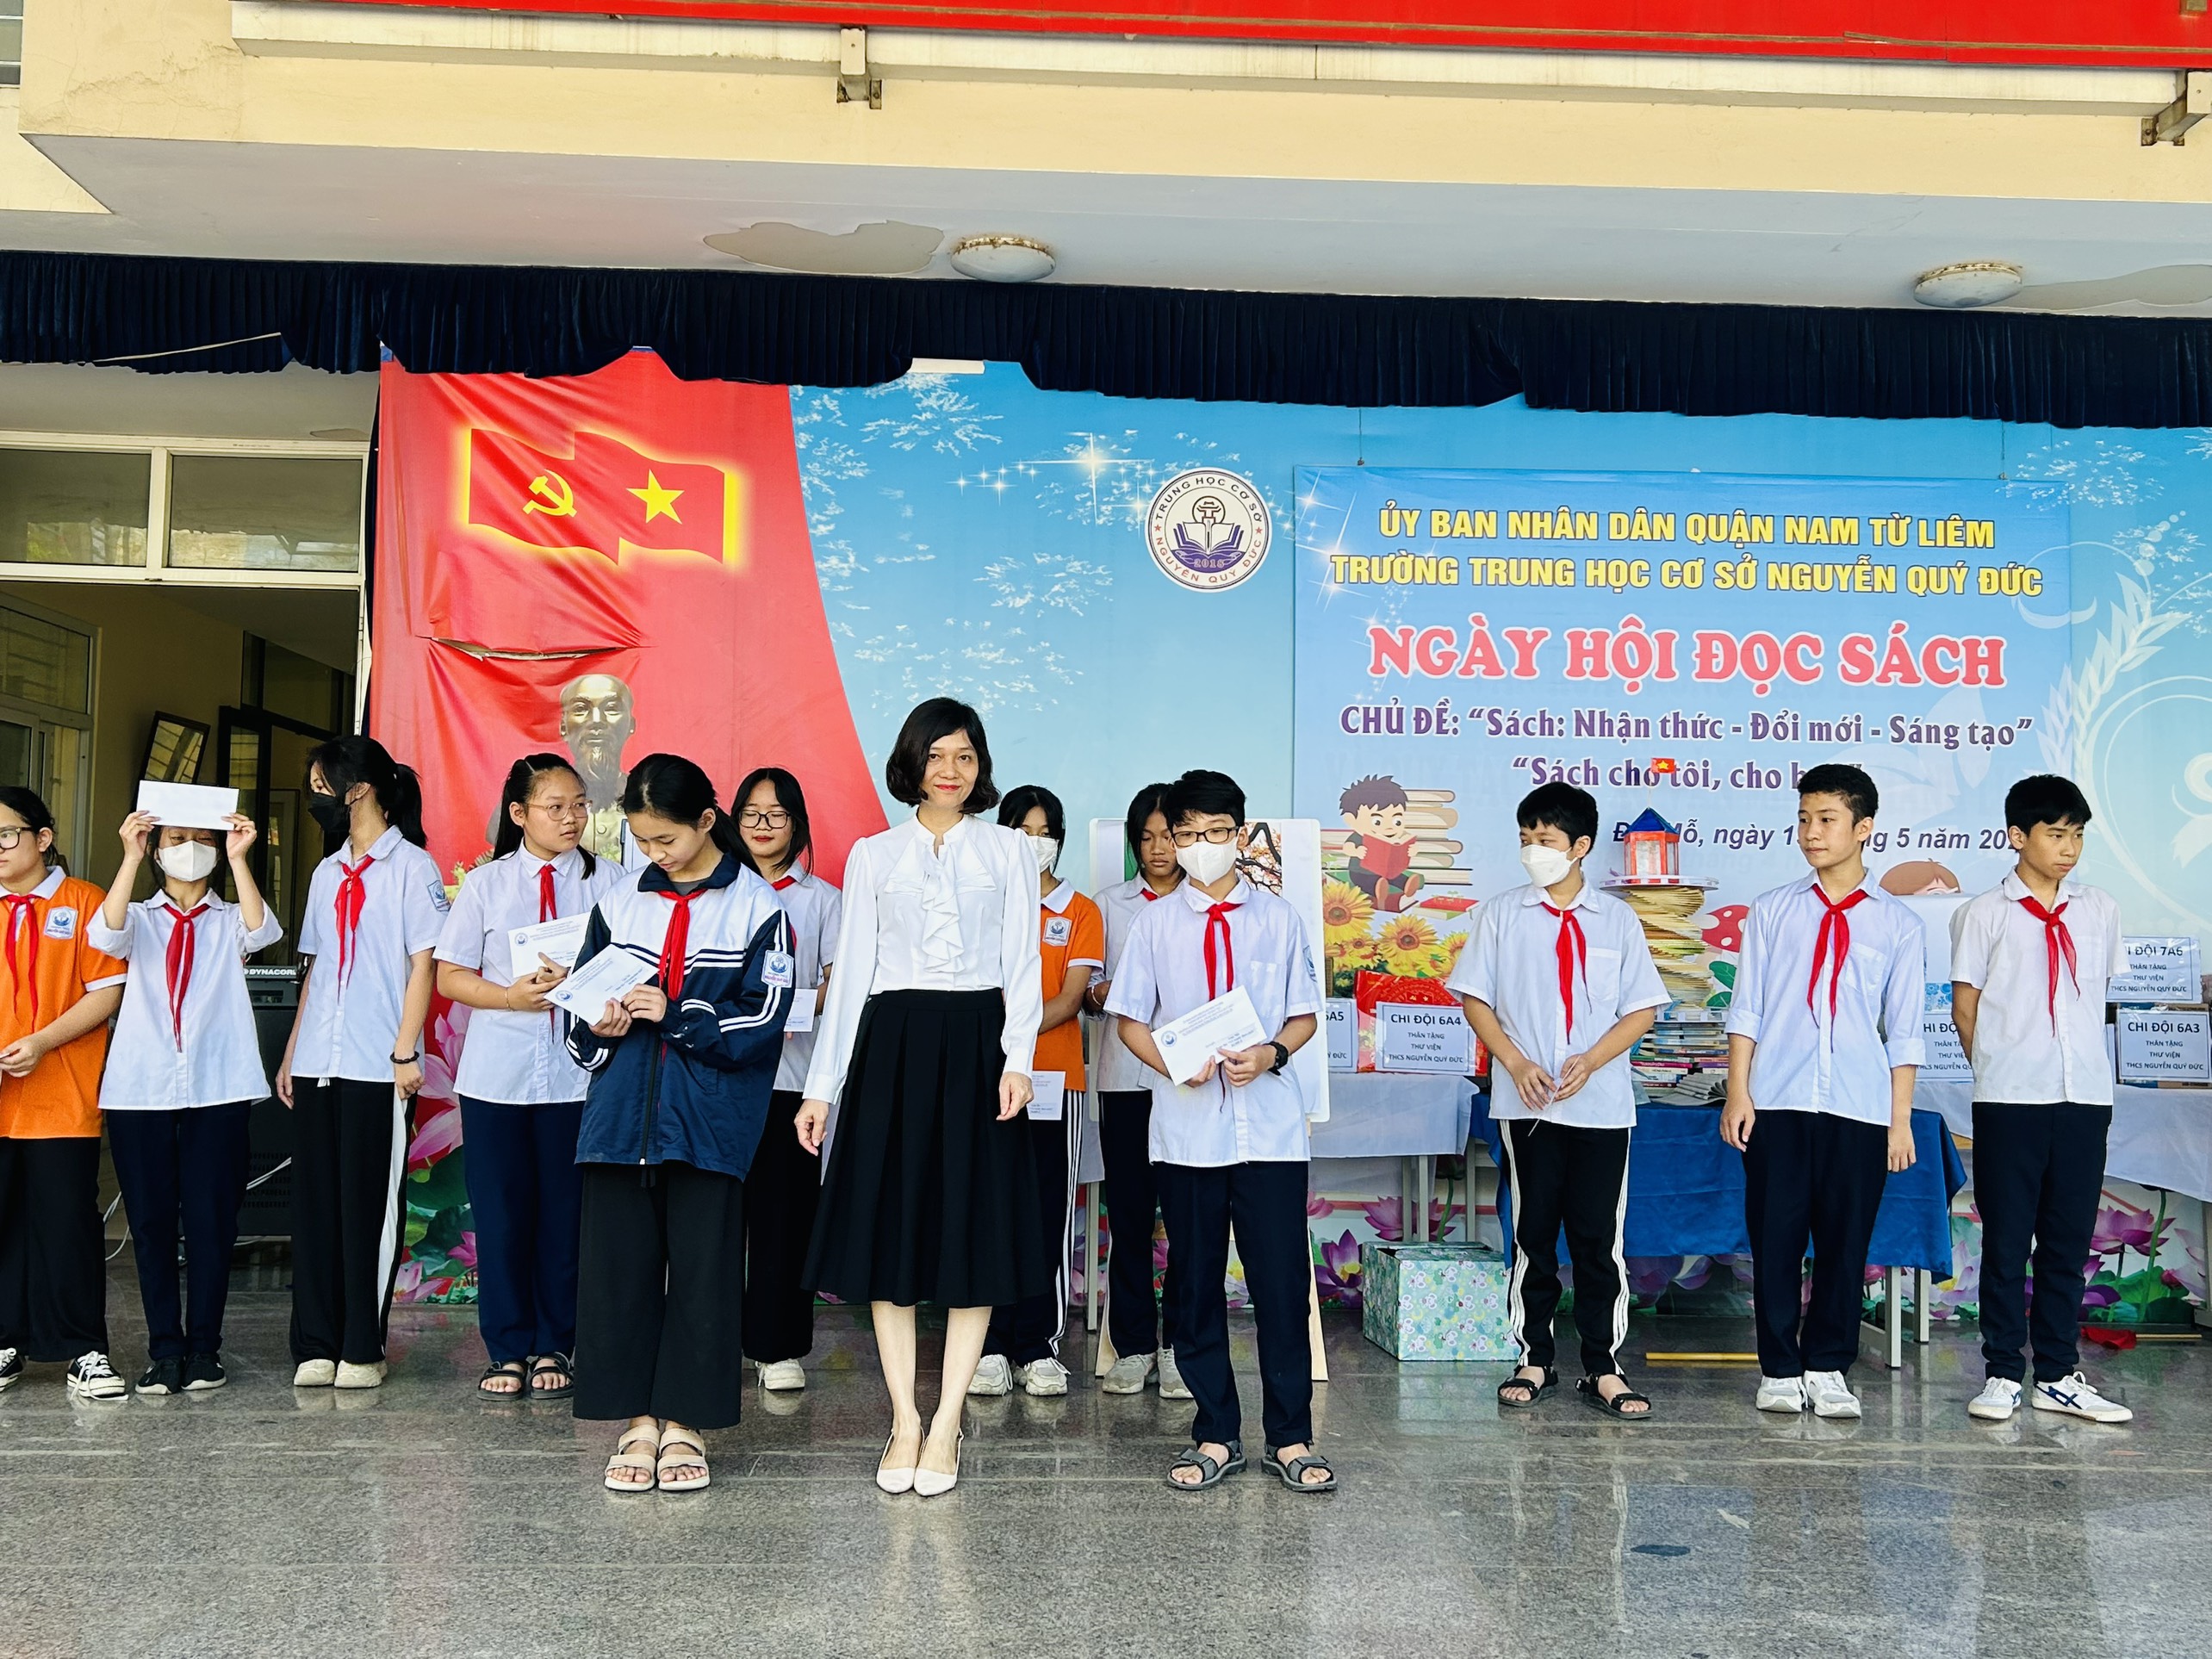 D:\Van phong\Ảnh\2022-2023\Video hoạt động HK2\29 Cô Hoàng Lan Hương - TT tổ Năng Khiếu trao giải cho các lớp đạt giải cao phần thi Vẽ tranh theo sách.jpg